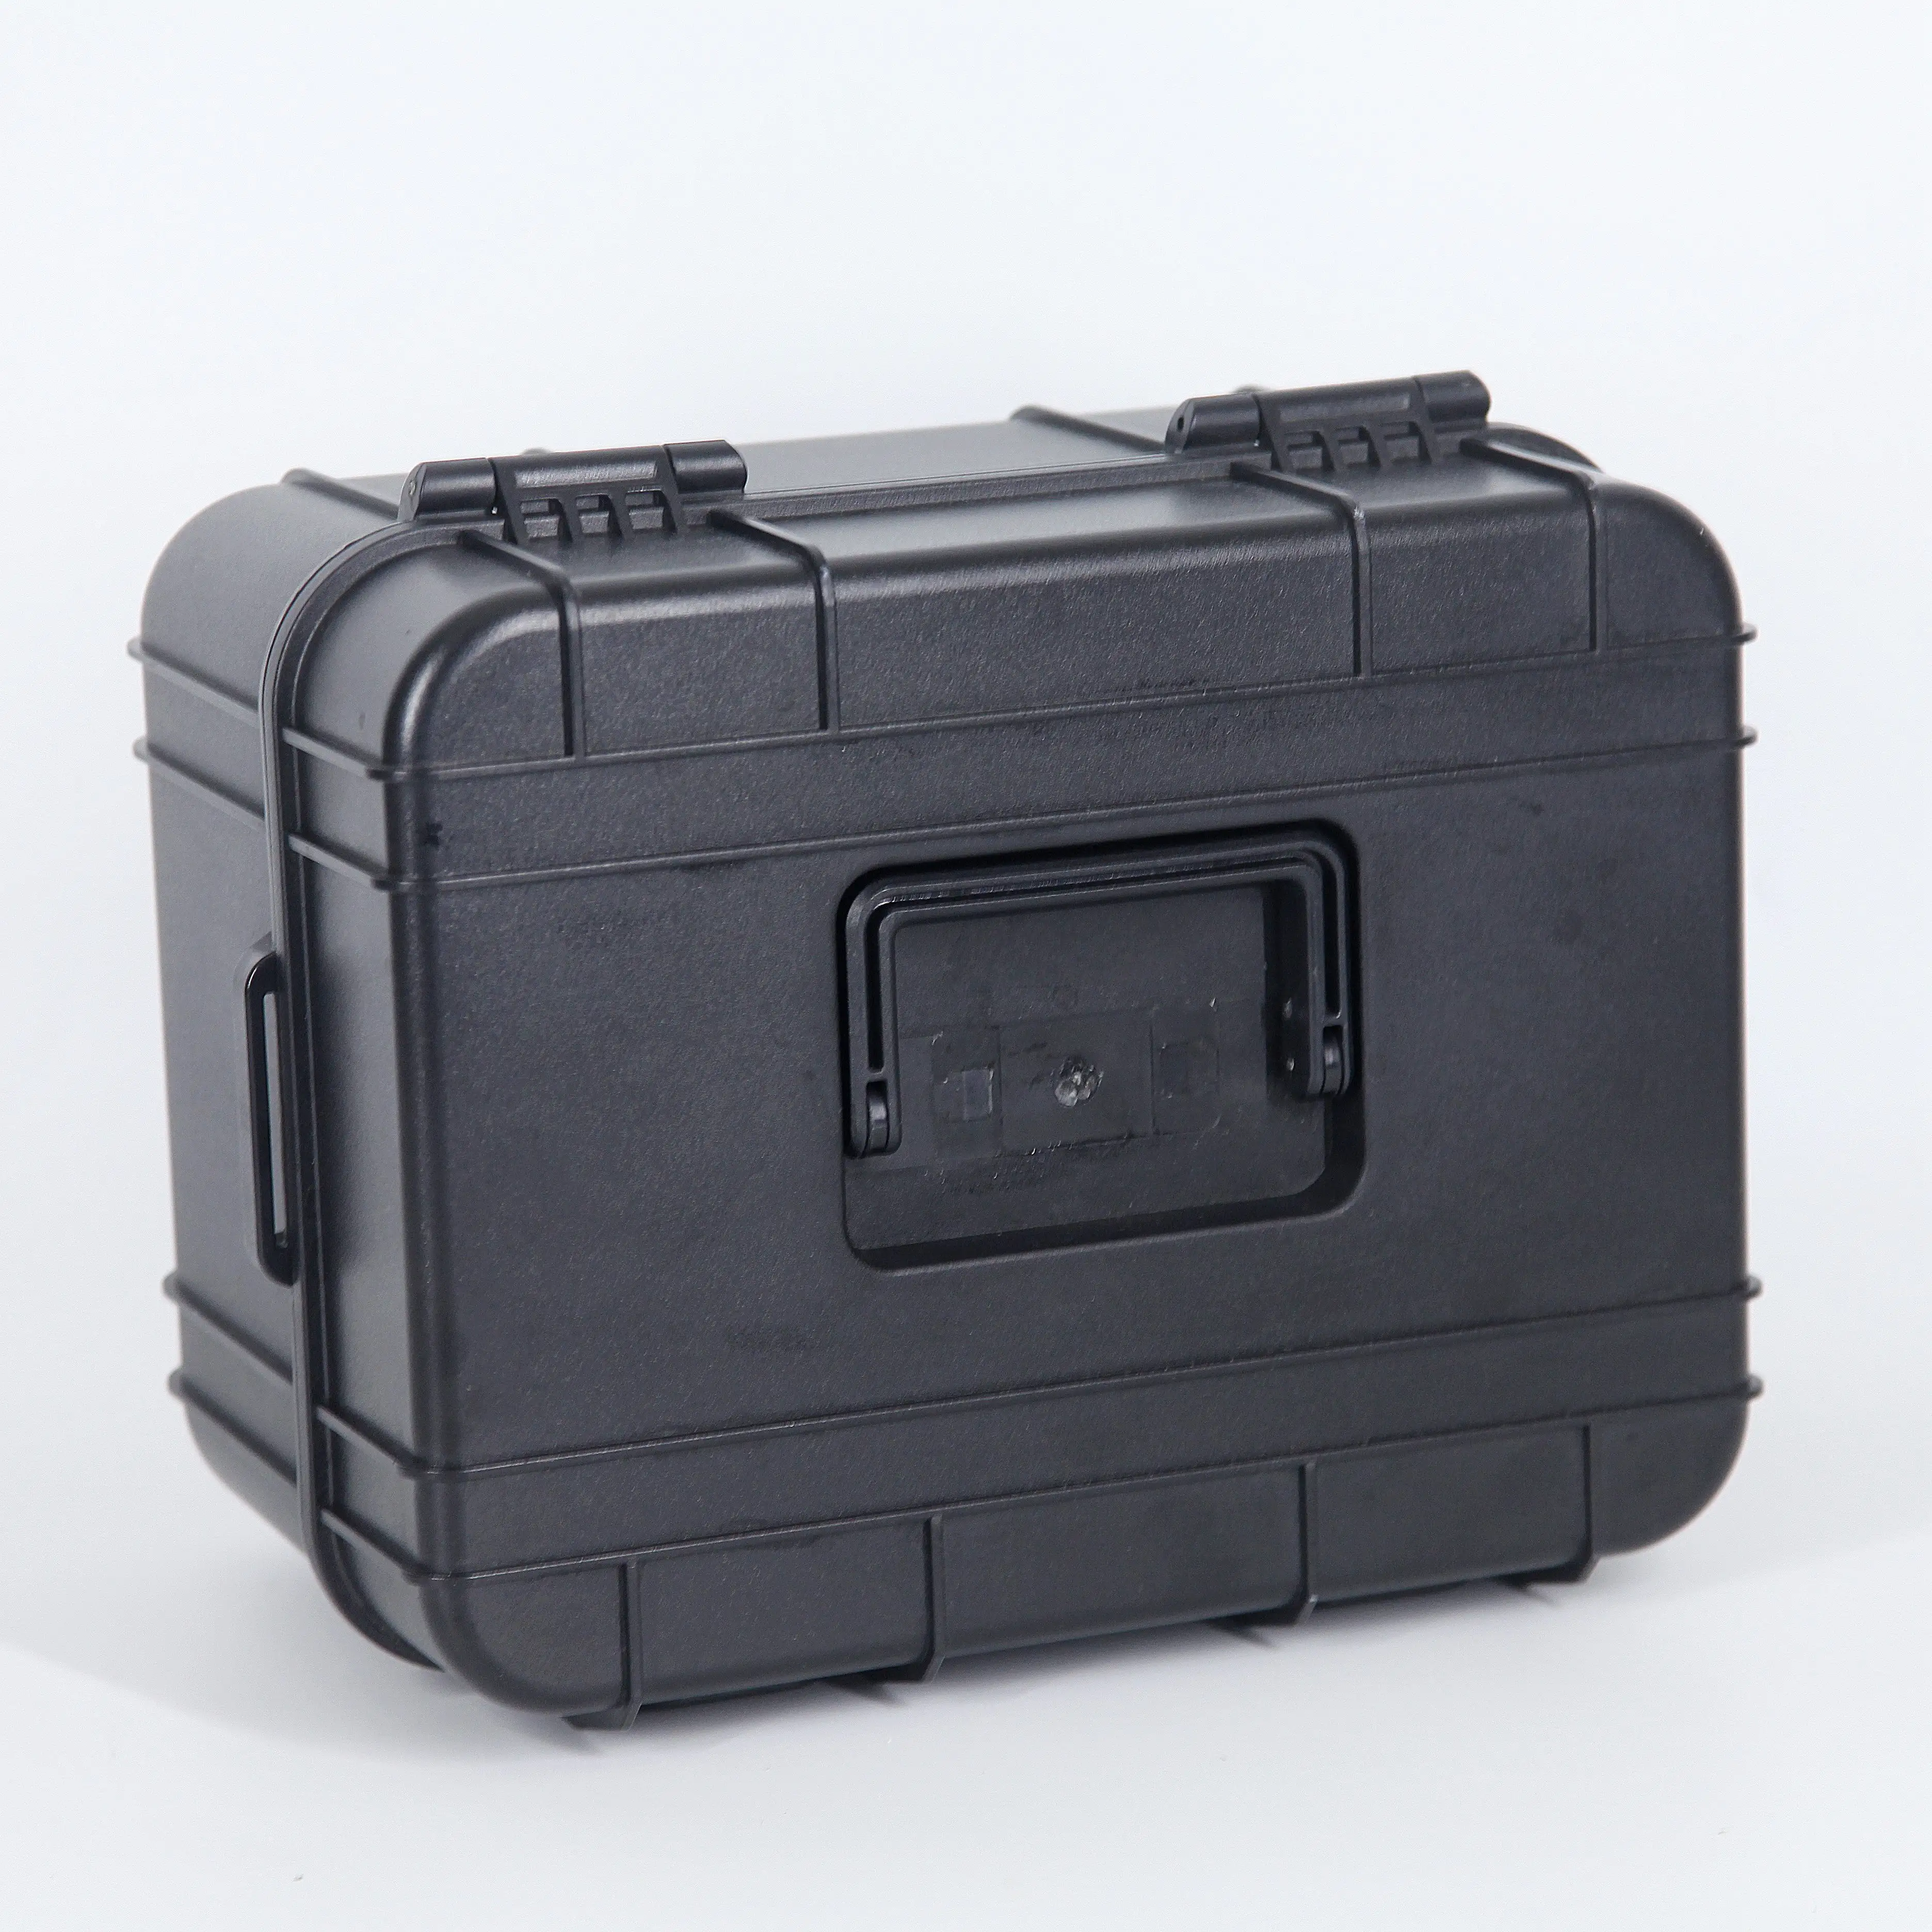 Caixa de ferramenta anti-corrosão personalizável, caixa de ferramenta preta à prova d'água para caminhadas, expedições de biosférias